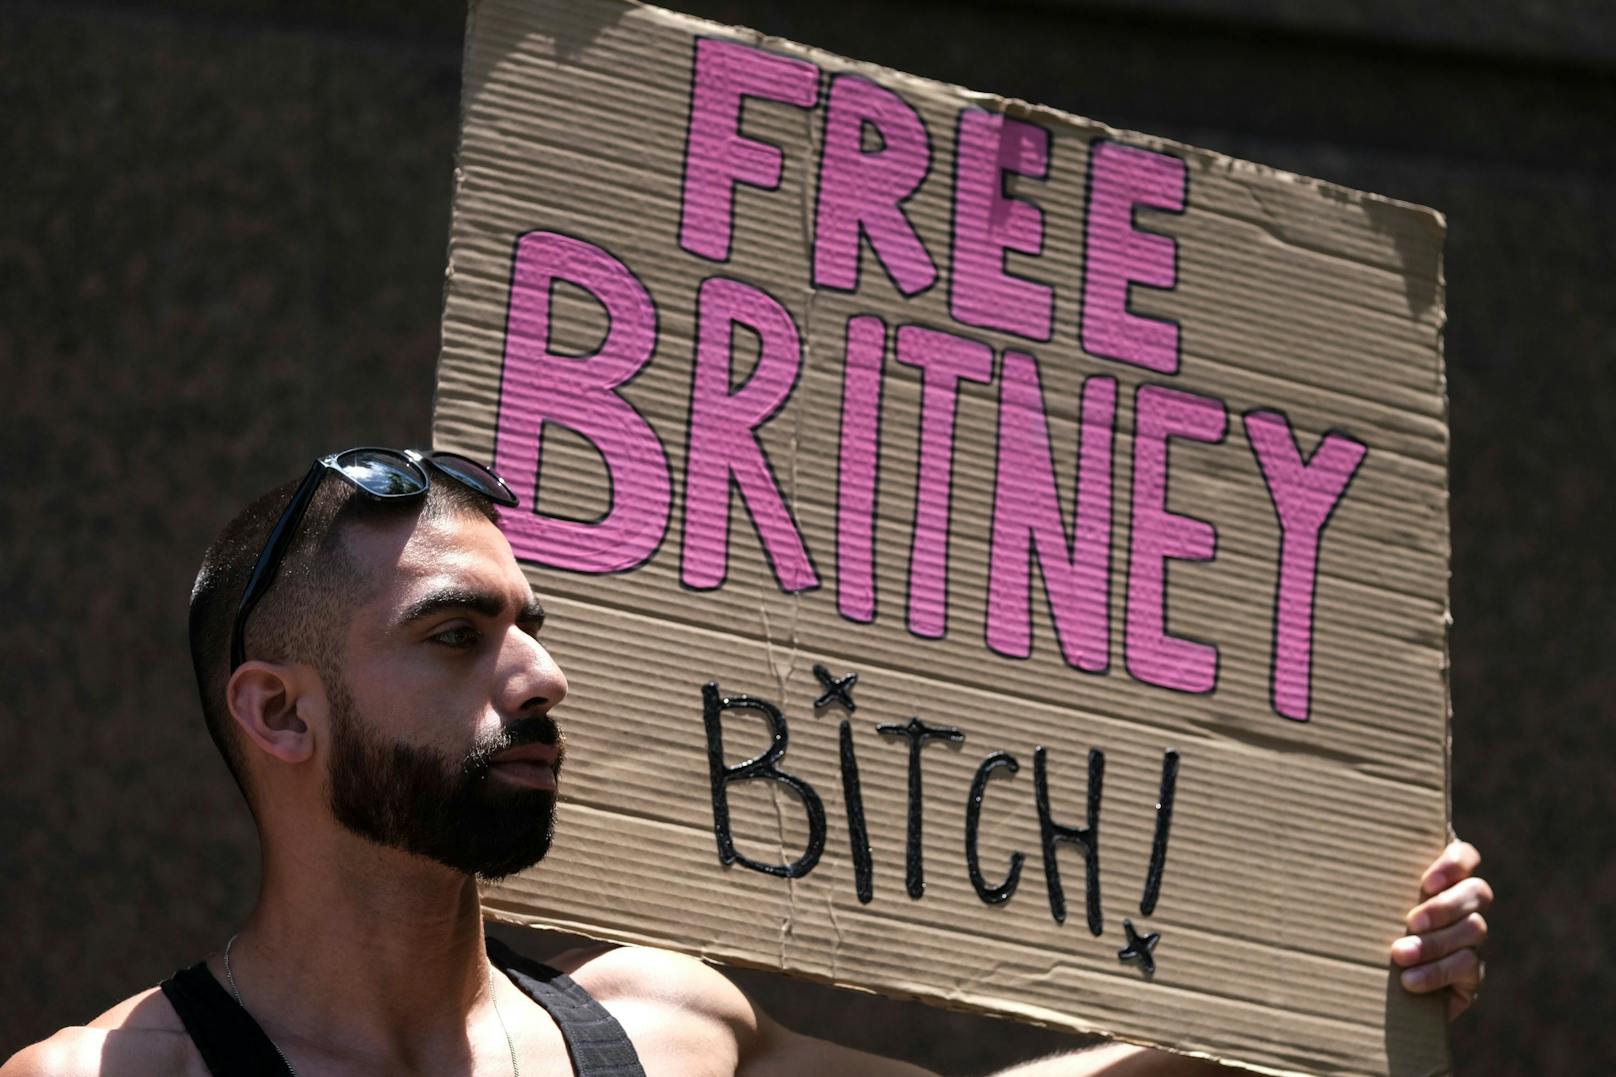 Free Britney Spears, Vor dem Gerichtsaal in Los Angeles kämpfen Britneys Fans für das Ende ihrer Vormundschaft